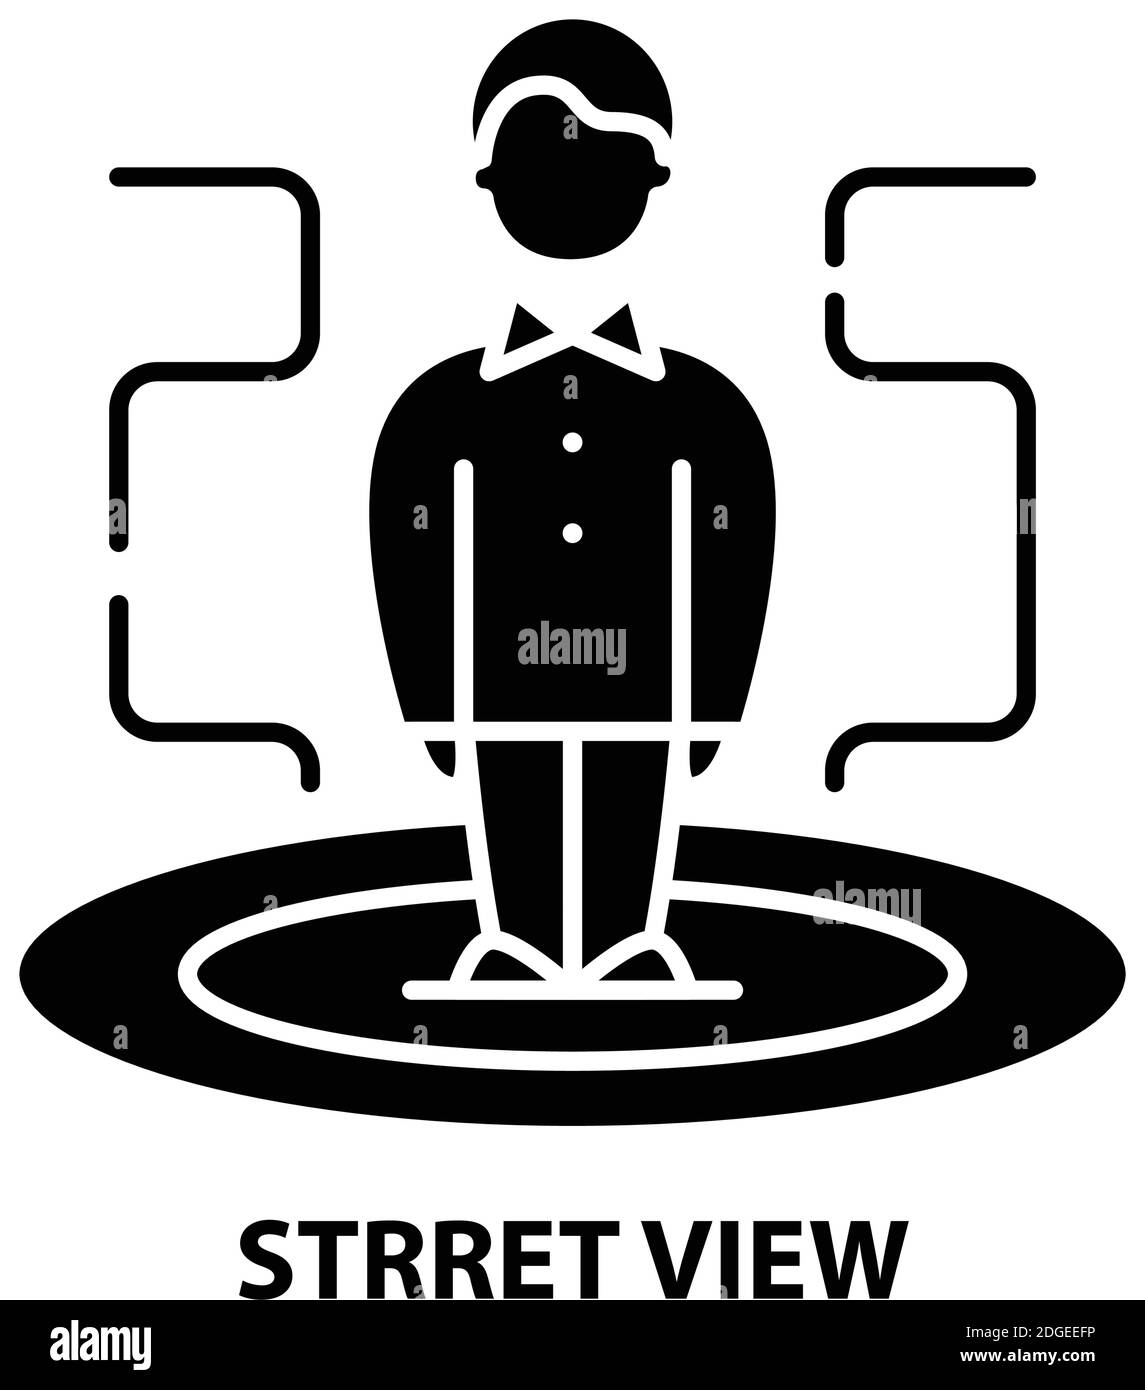 icona della vista strret, segno vettoriale nero con tratti modificabili, illustrazione concettuale Illustrazione Vettoriale